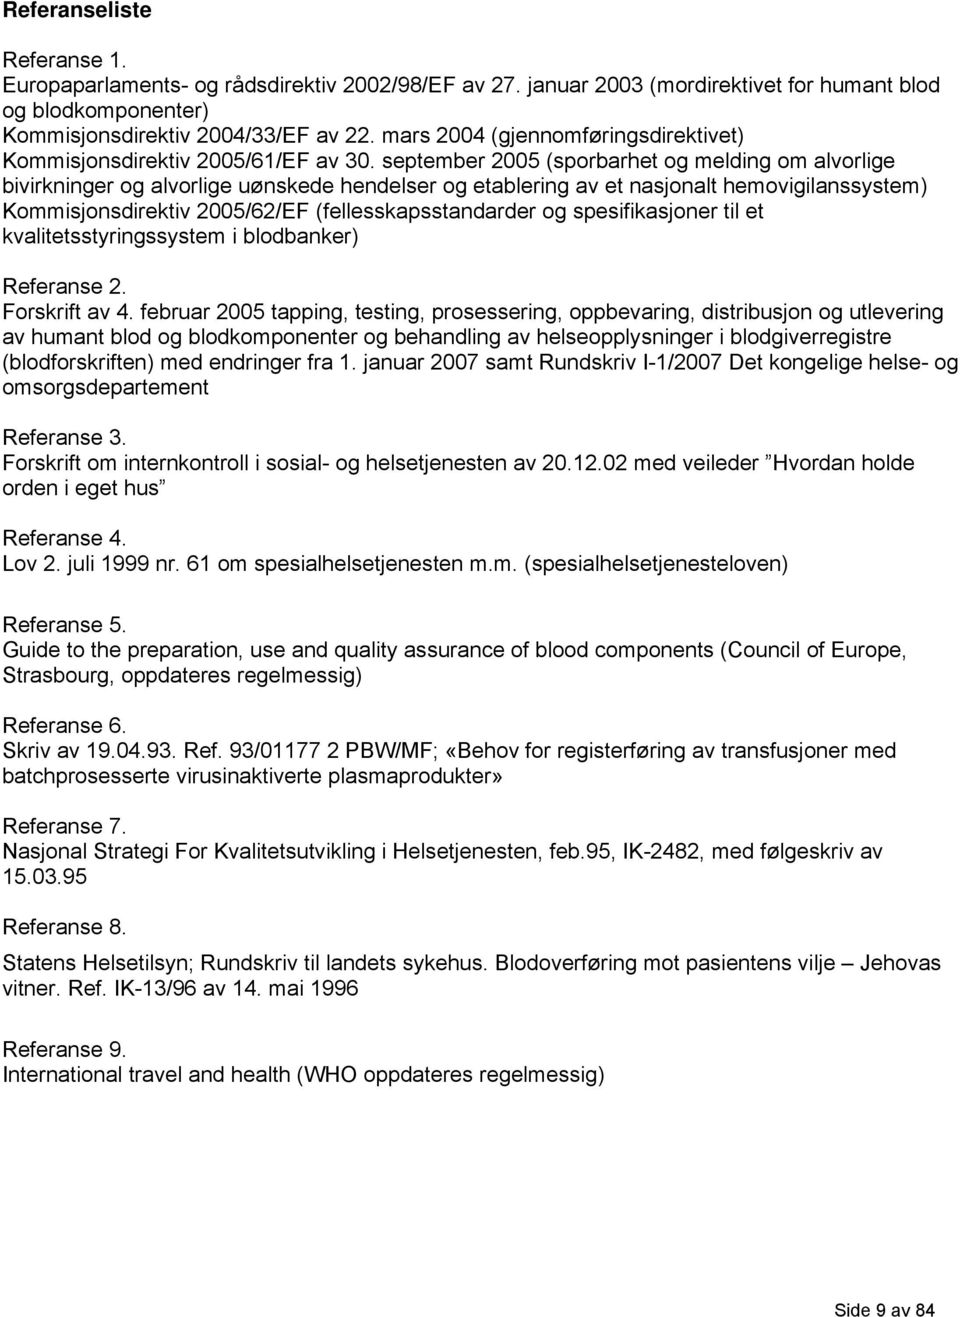 september 2005 (sporbarhet og melding om alvorlige bivirkninger og alvorlige uønskede hendelser og etablering av et nasjonalt hemovigilanssystem) Kommisjonsdirektiv 2005/62/EF (fellesskapsstandarder